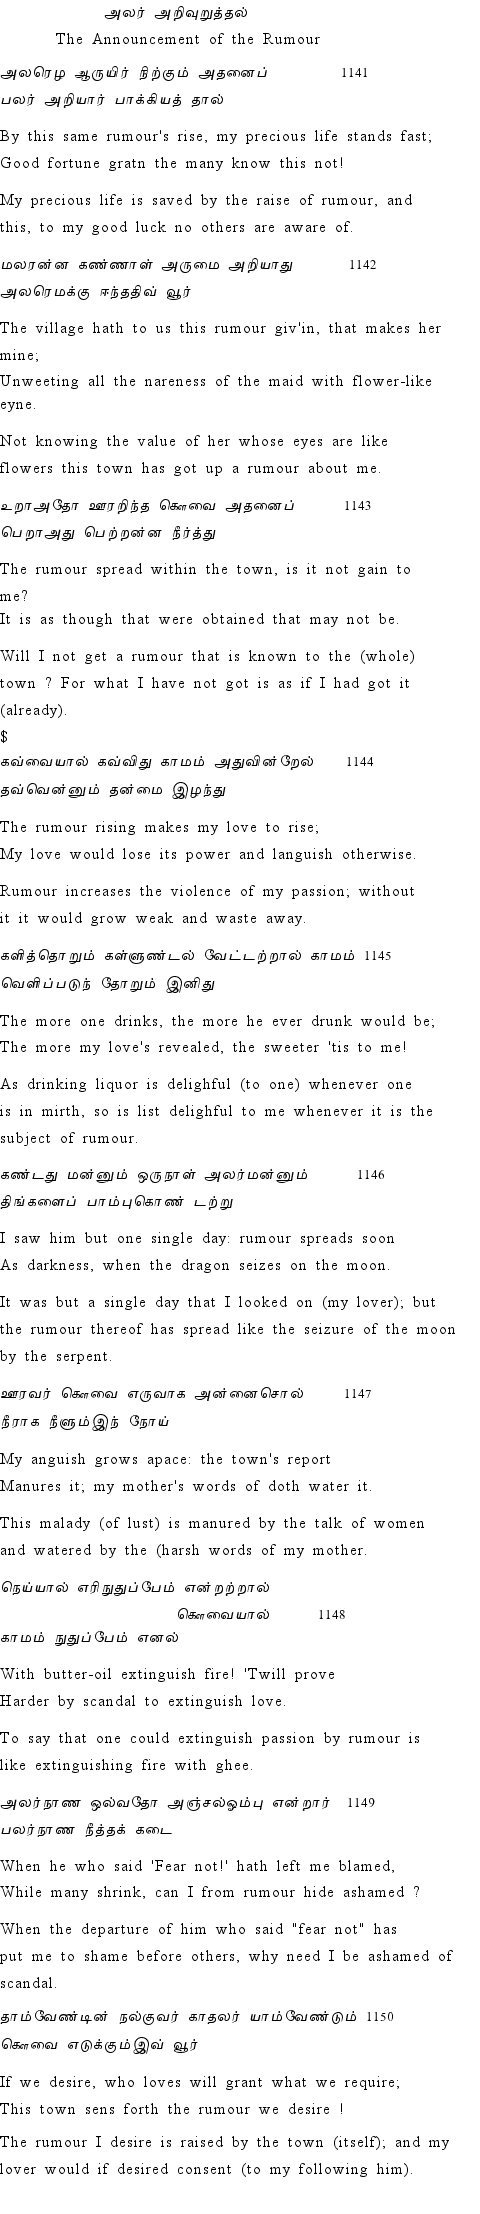 Text of Adhikaram 115